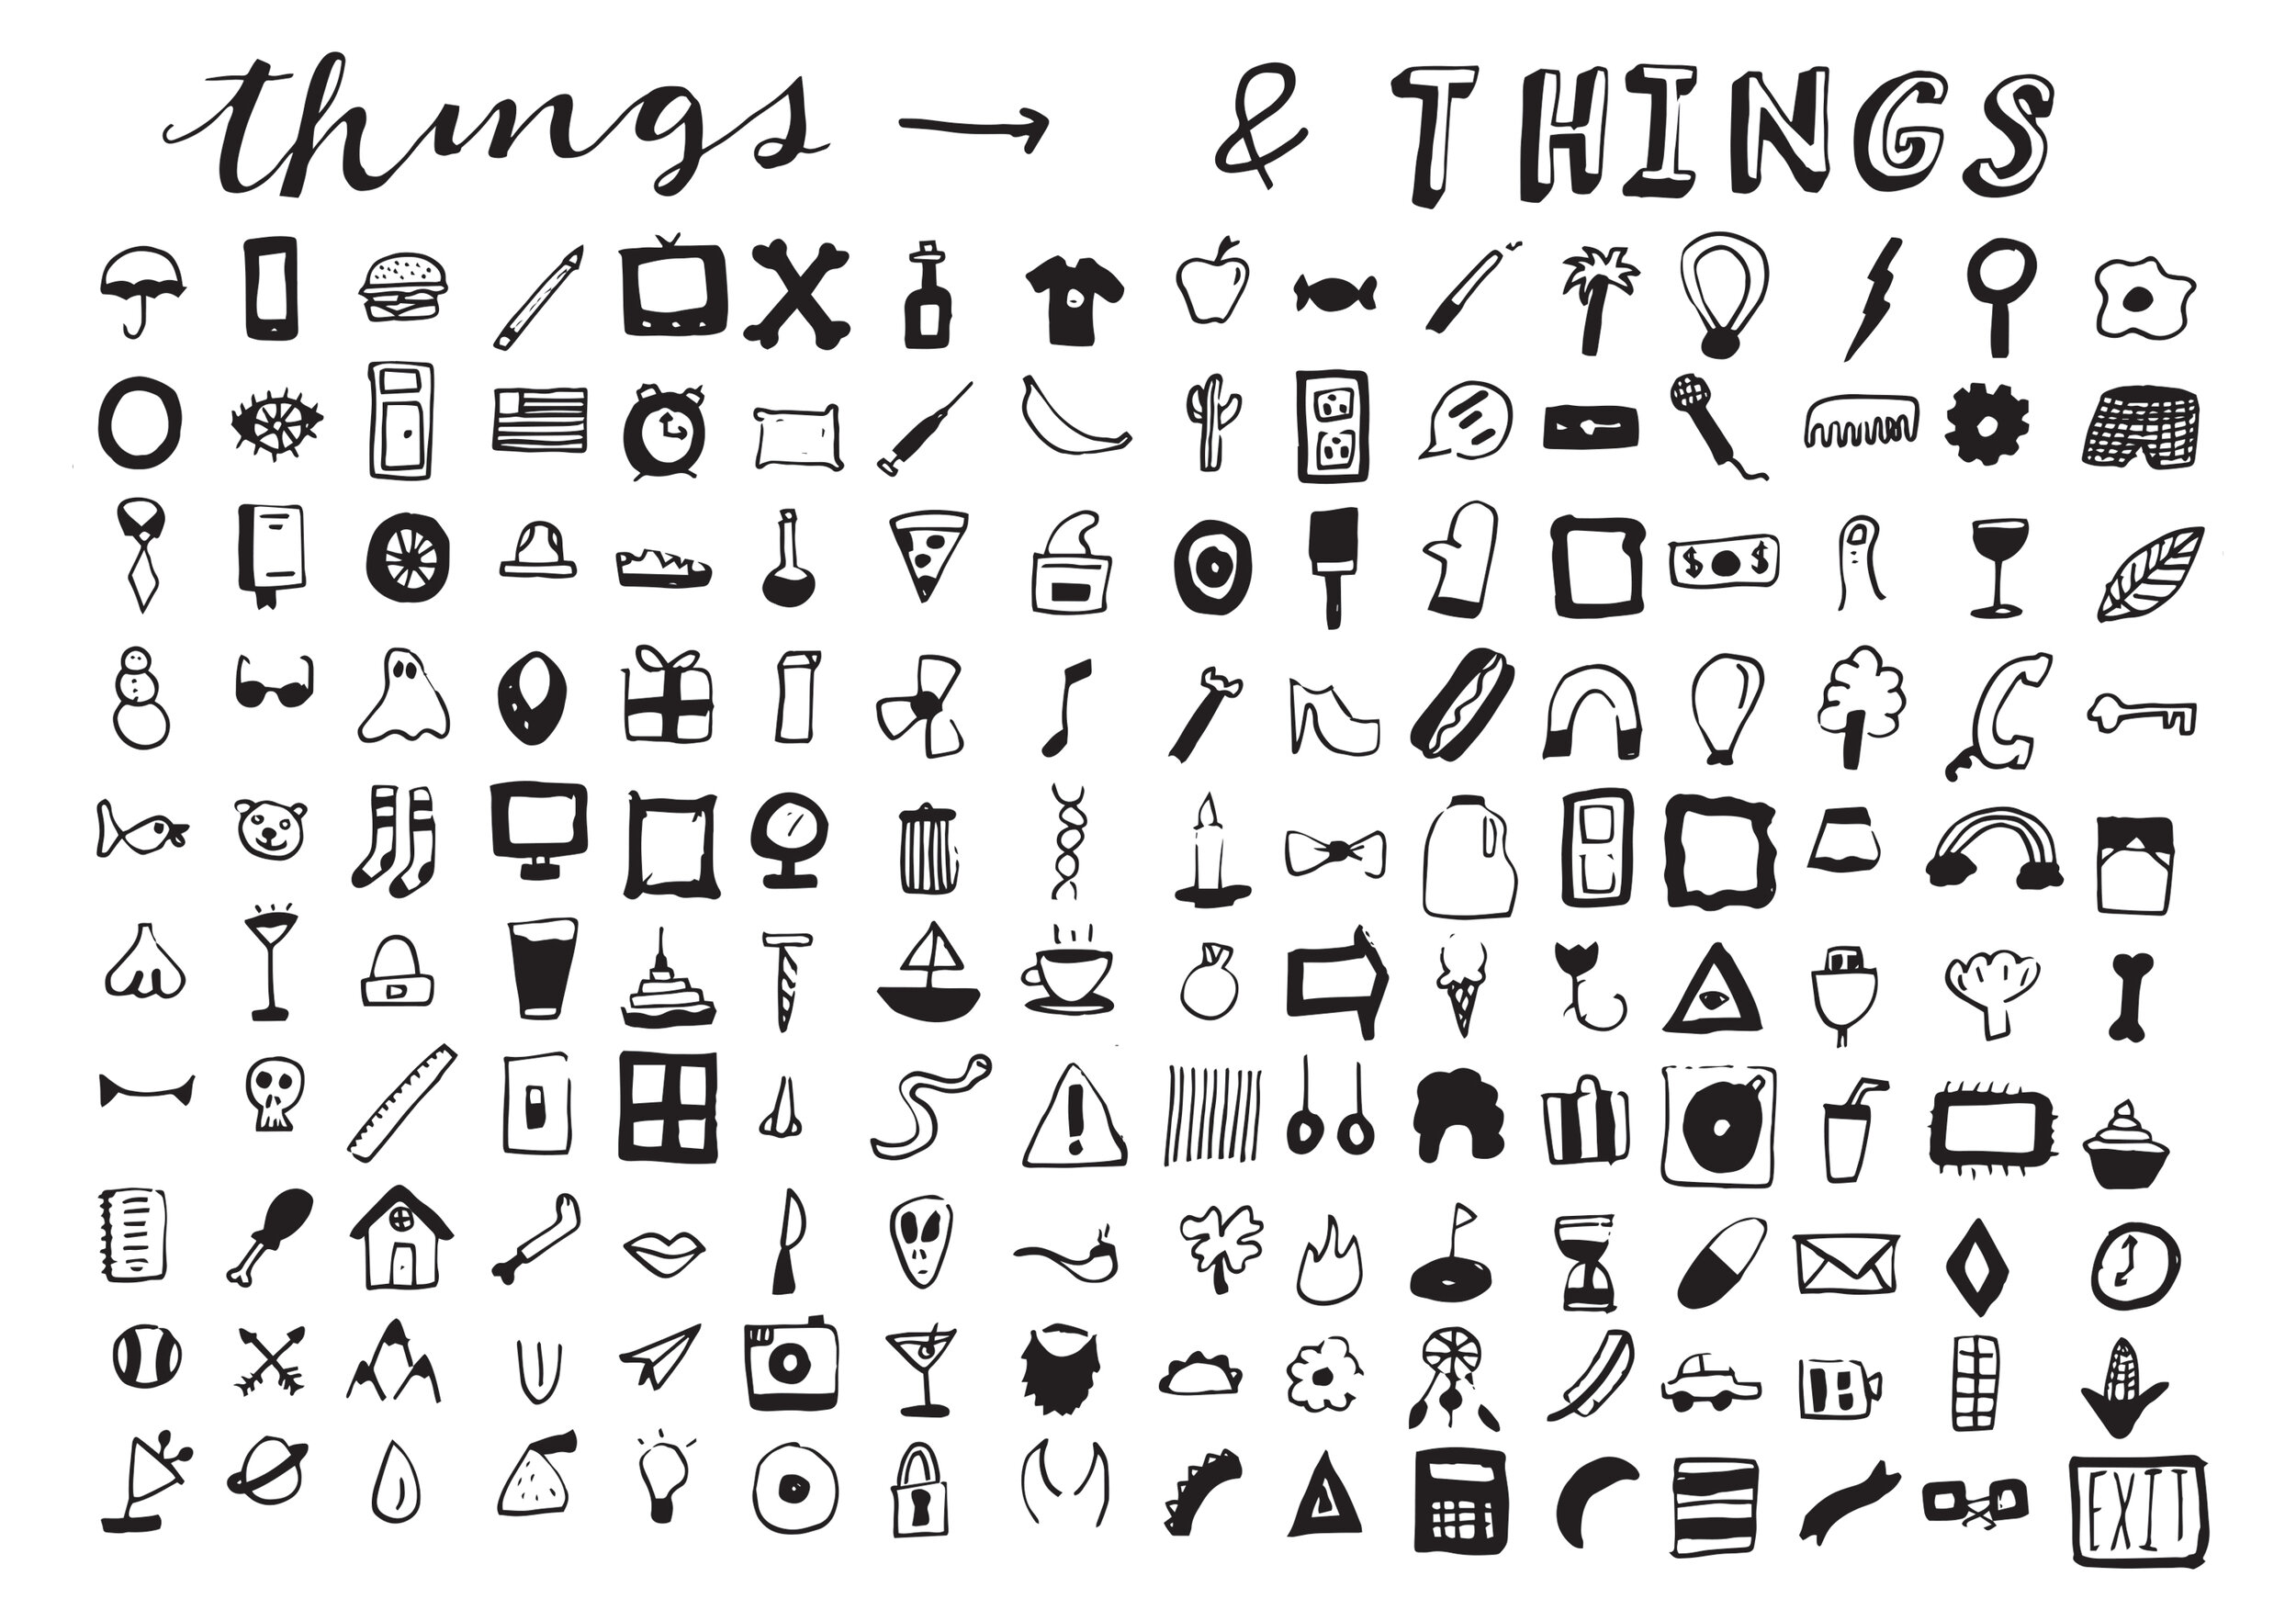 Things-Vectorized.jpg